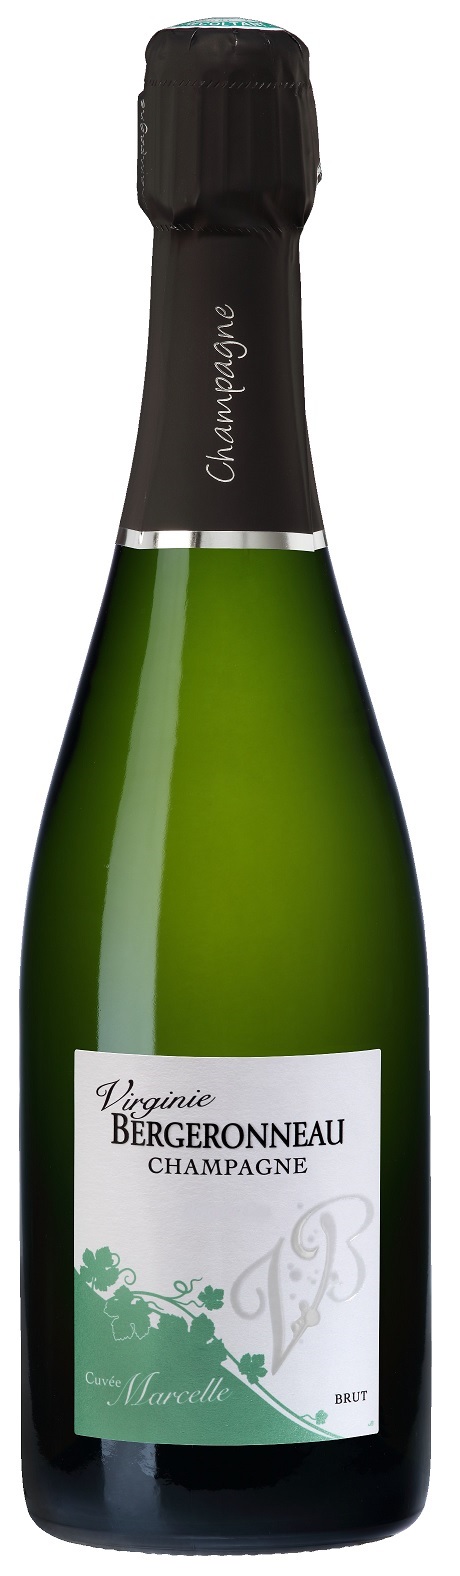 Champagne Cuvée Marcelle Virginie Bergeronneau